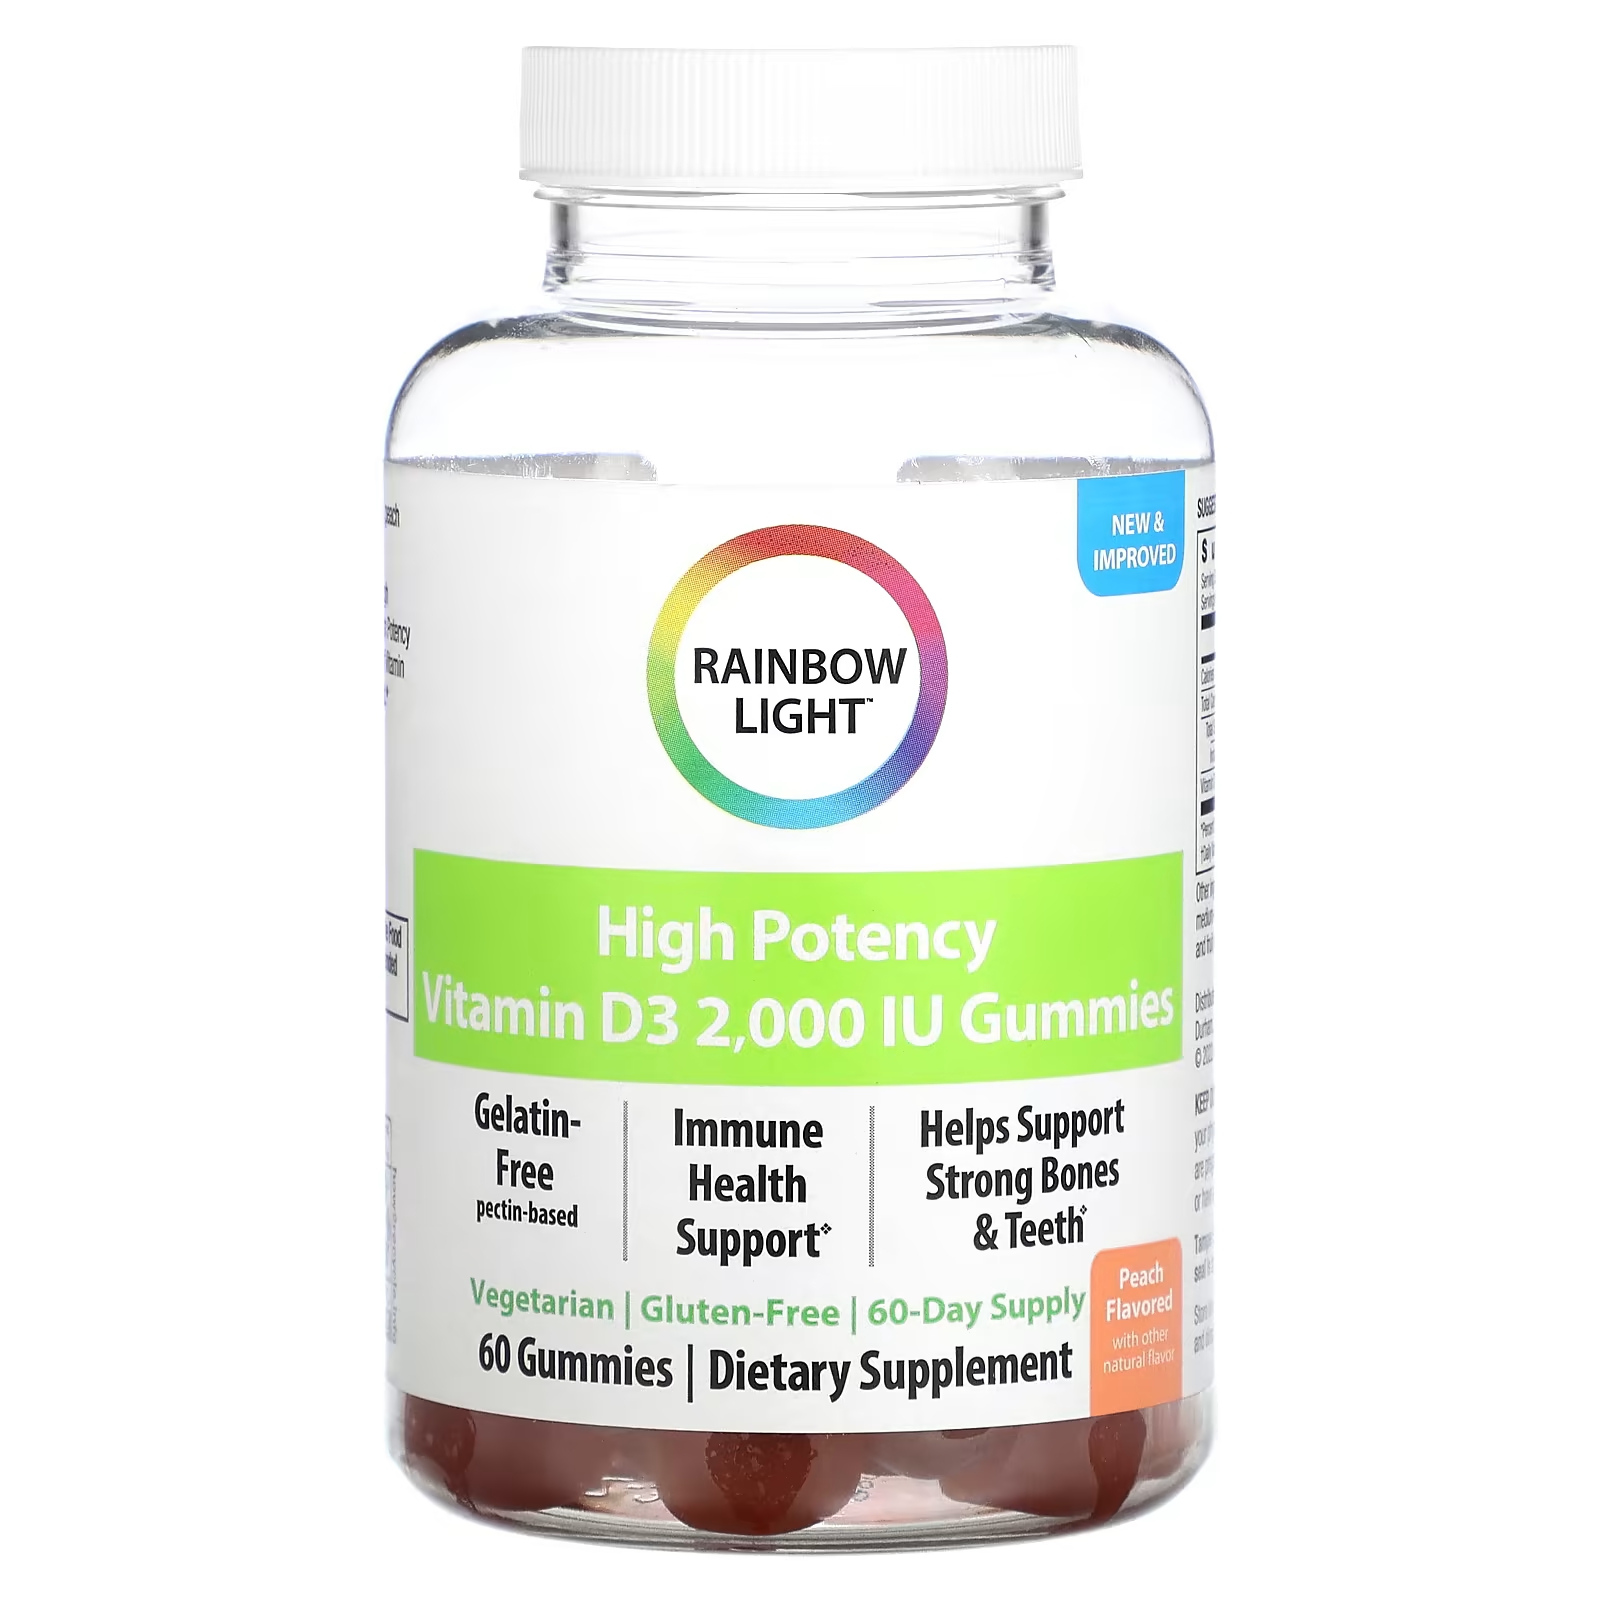 Высокоэффективный витамин D3 Rainbow Light, персик, 2000 МЕ, 60 жевательных таблеток